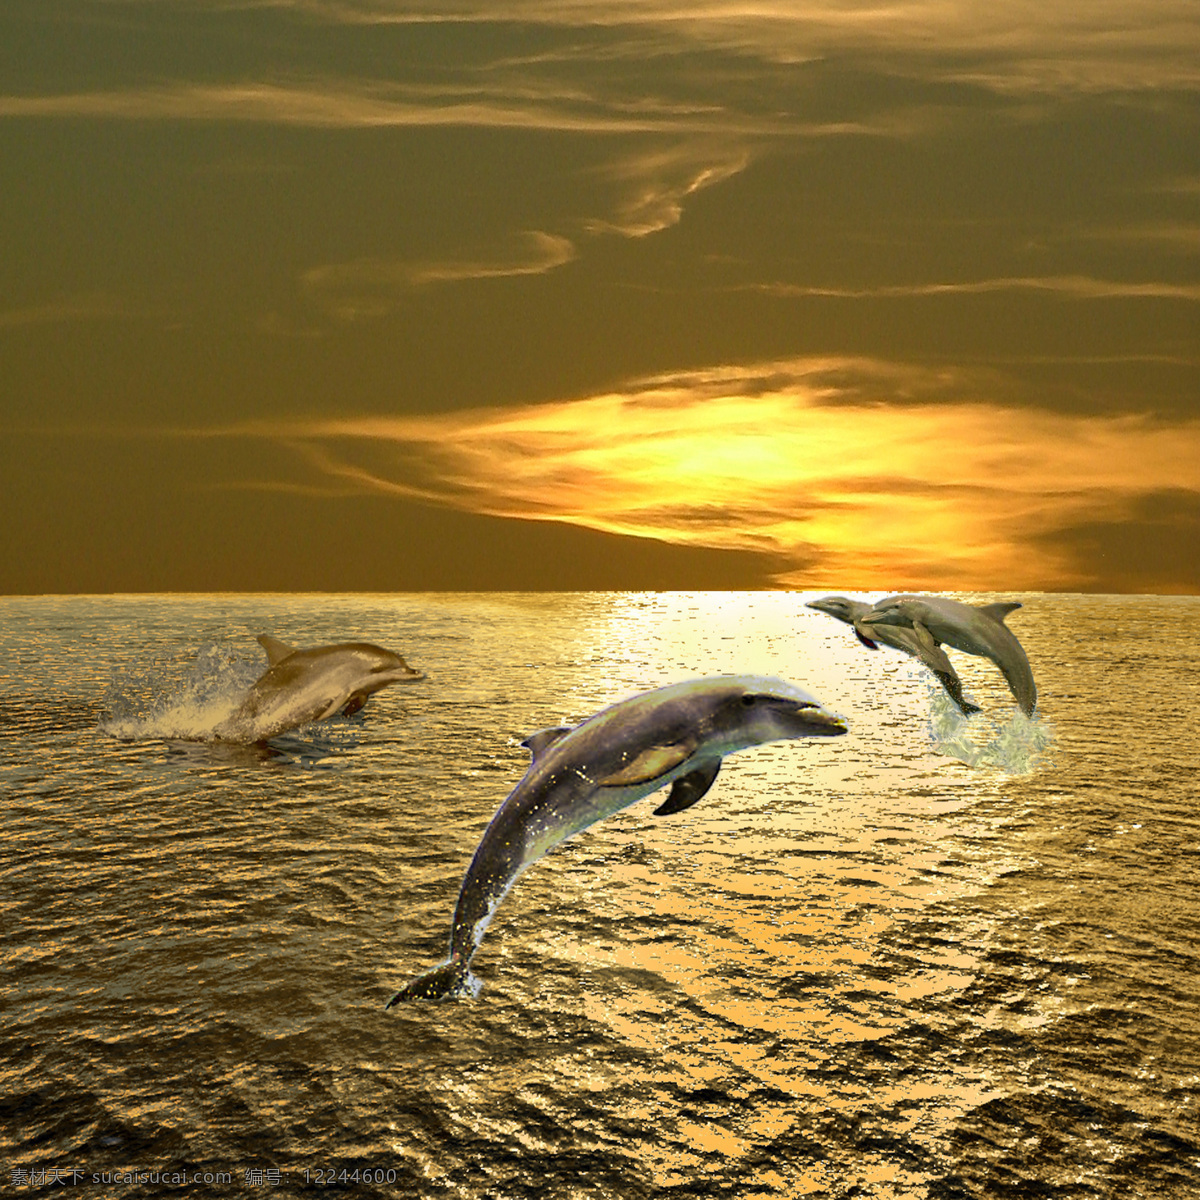 四 跳出 海 面的 海豚 跳跃的海豚 天空 蓝天白云 海洋 大海 浪花 海面 四个海豚 跳跃 高清图片 水中生物 生物世界